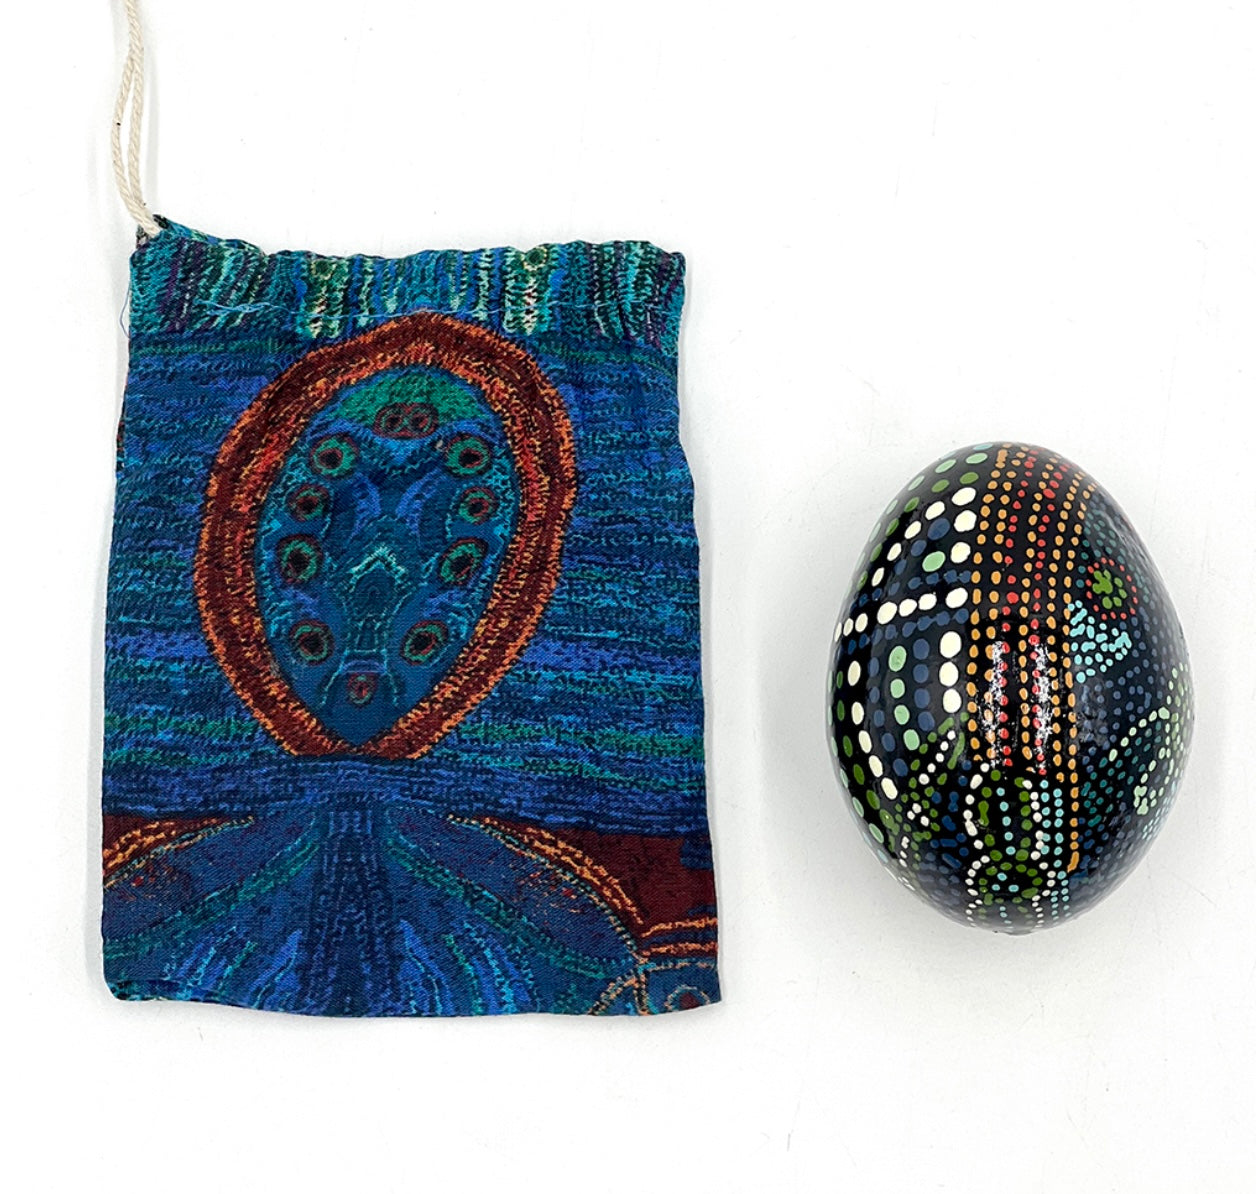 Ornamental Egg - Julie Woods - Minyma Kutjara